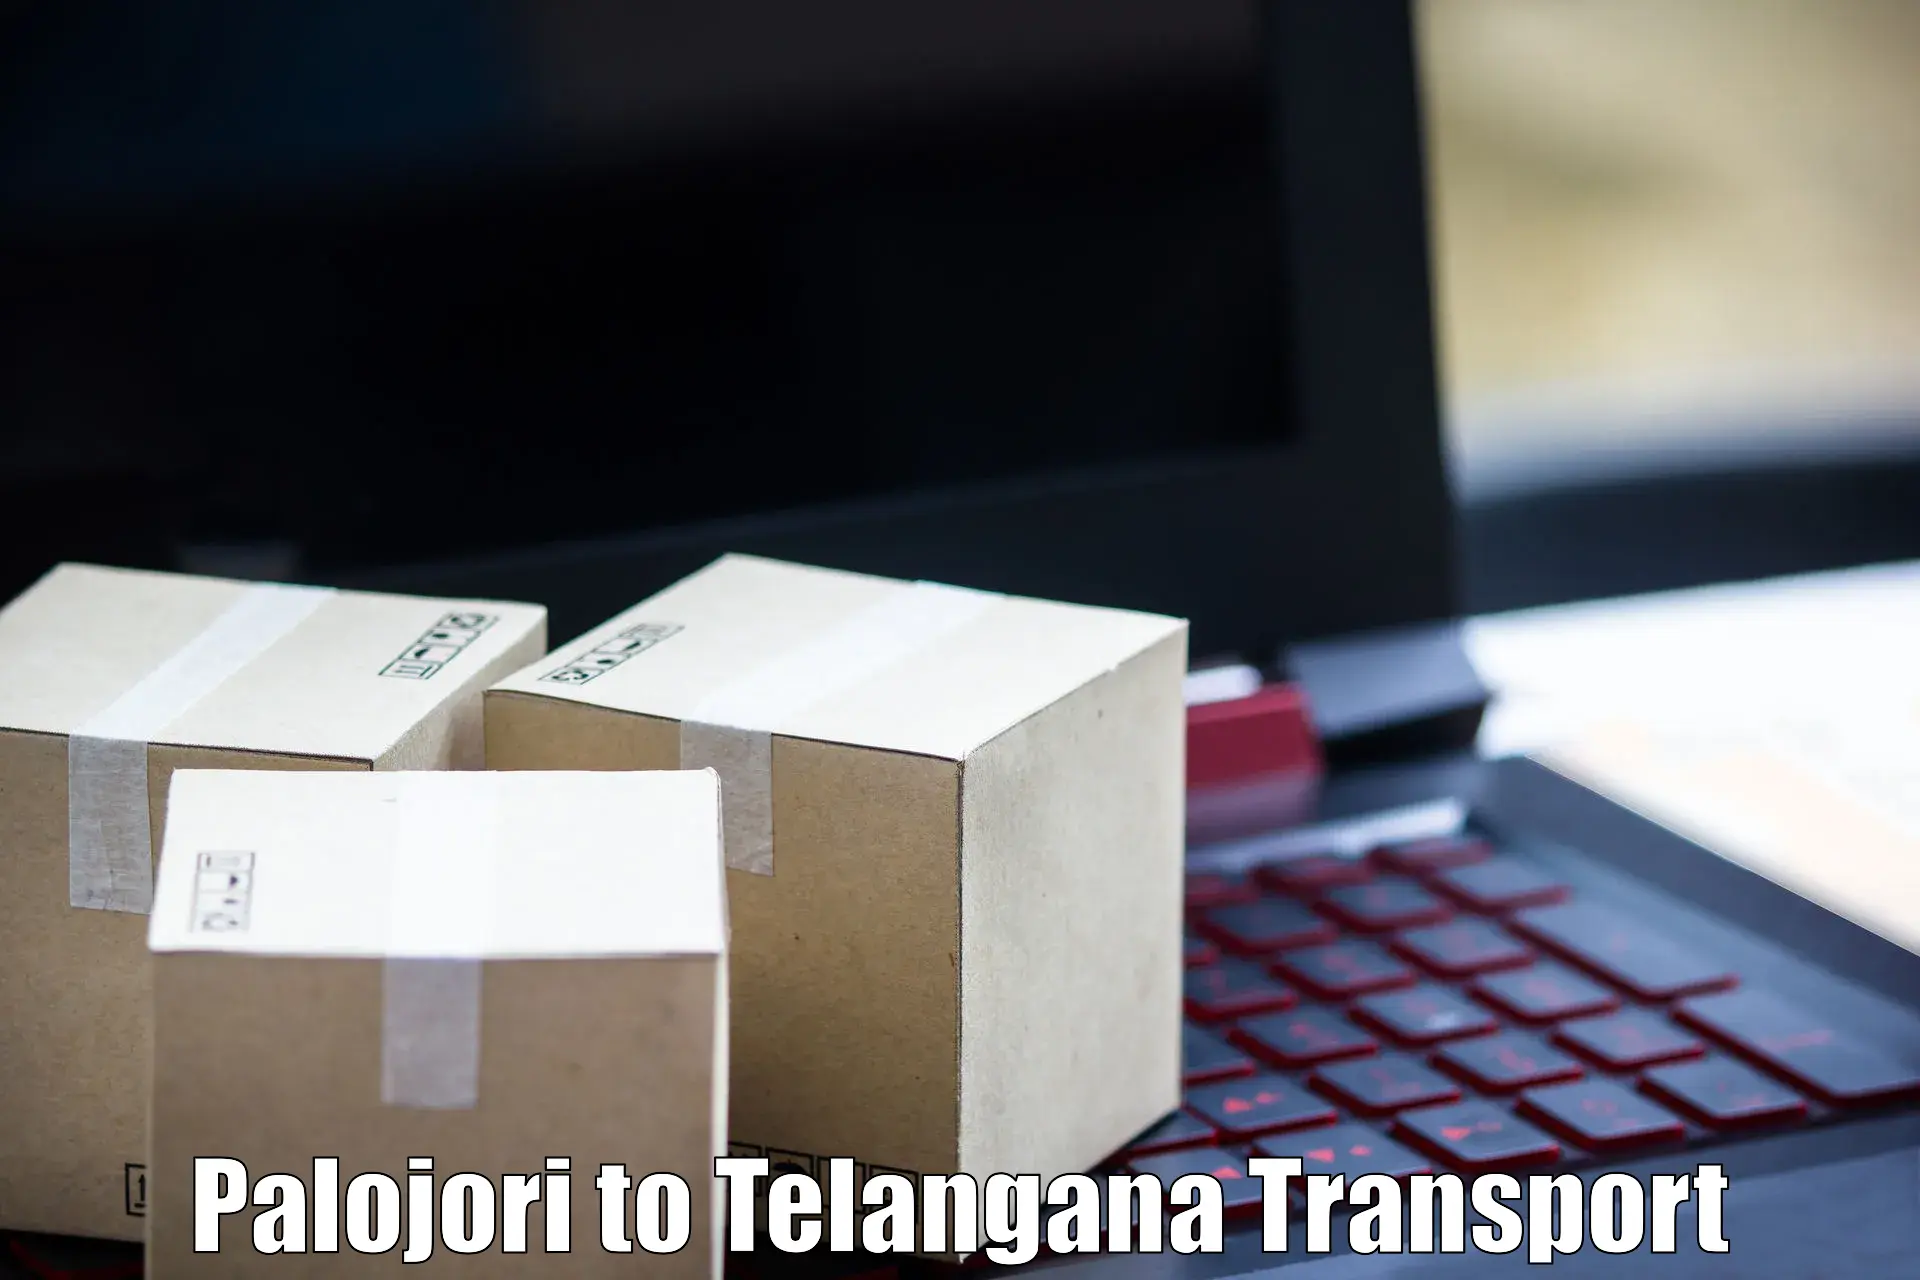 Transport in sharing Palojori to Vikarabad